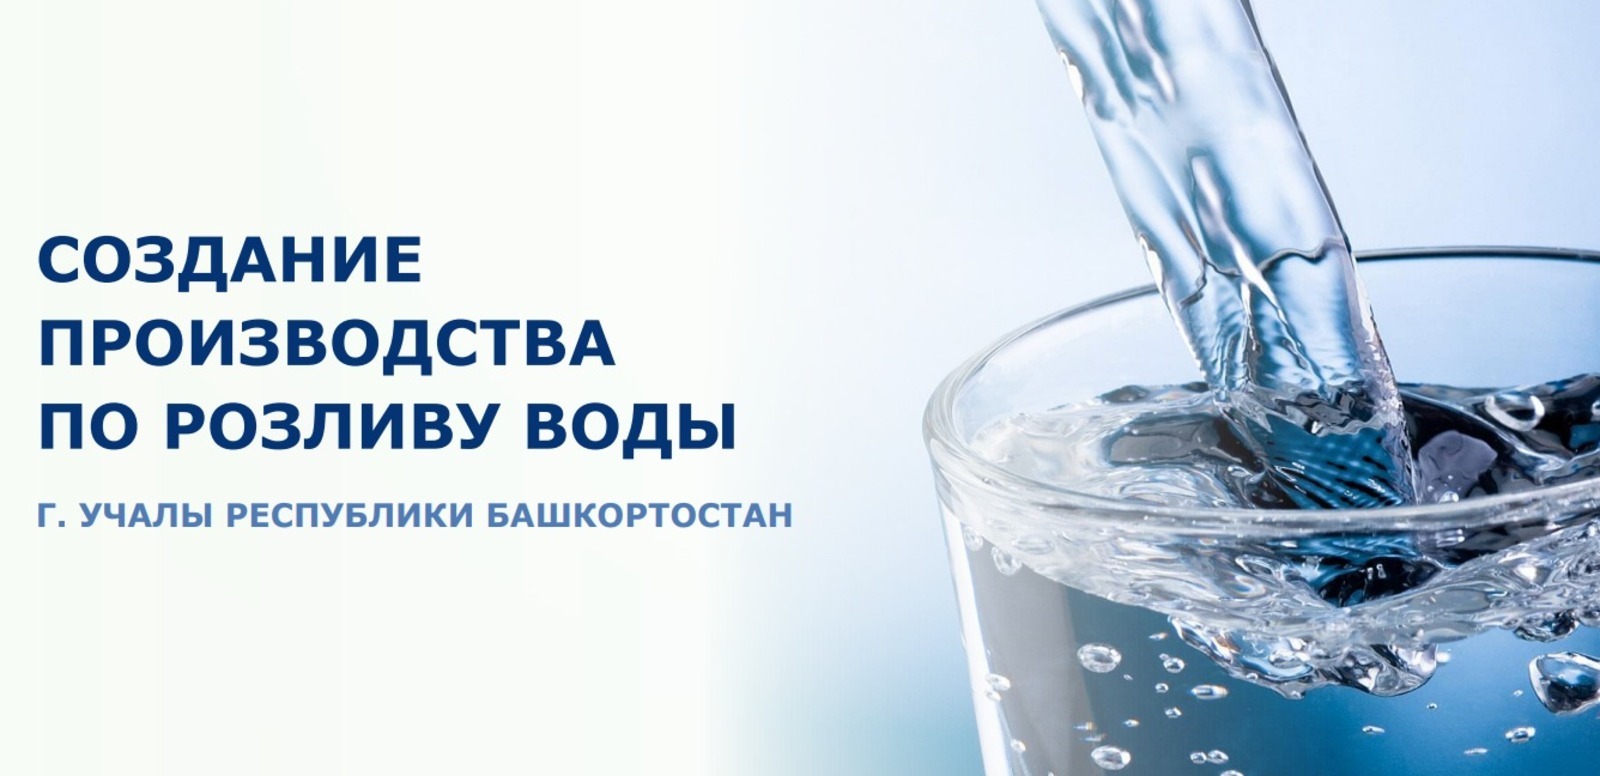 Инвесторам предлагают открыть предприятие по розливу воды в Башкирии